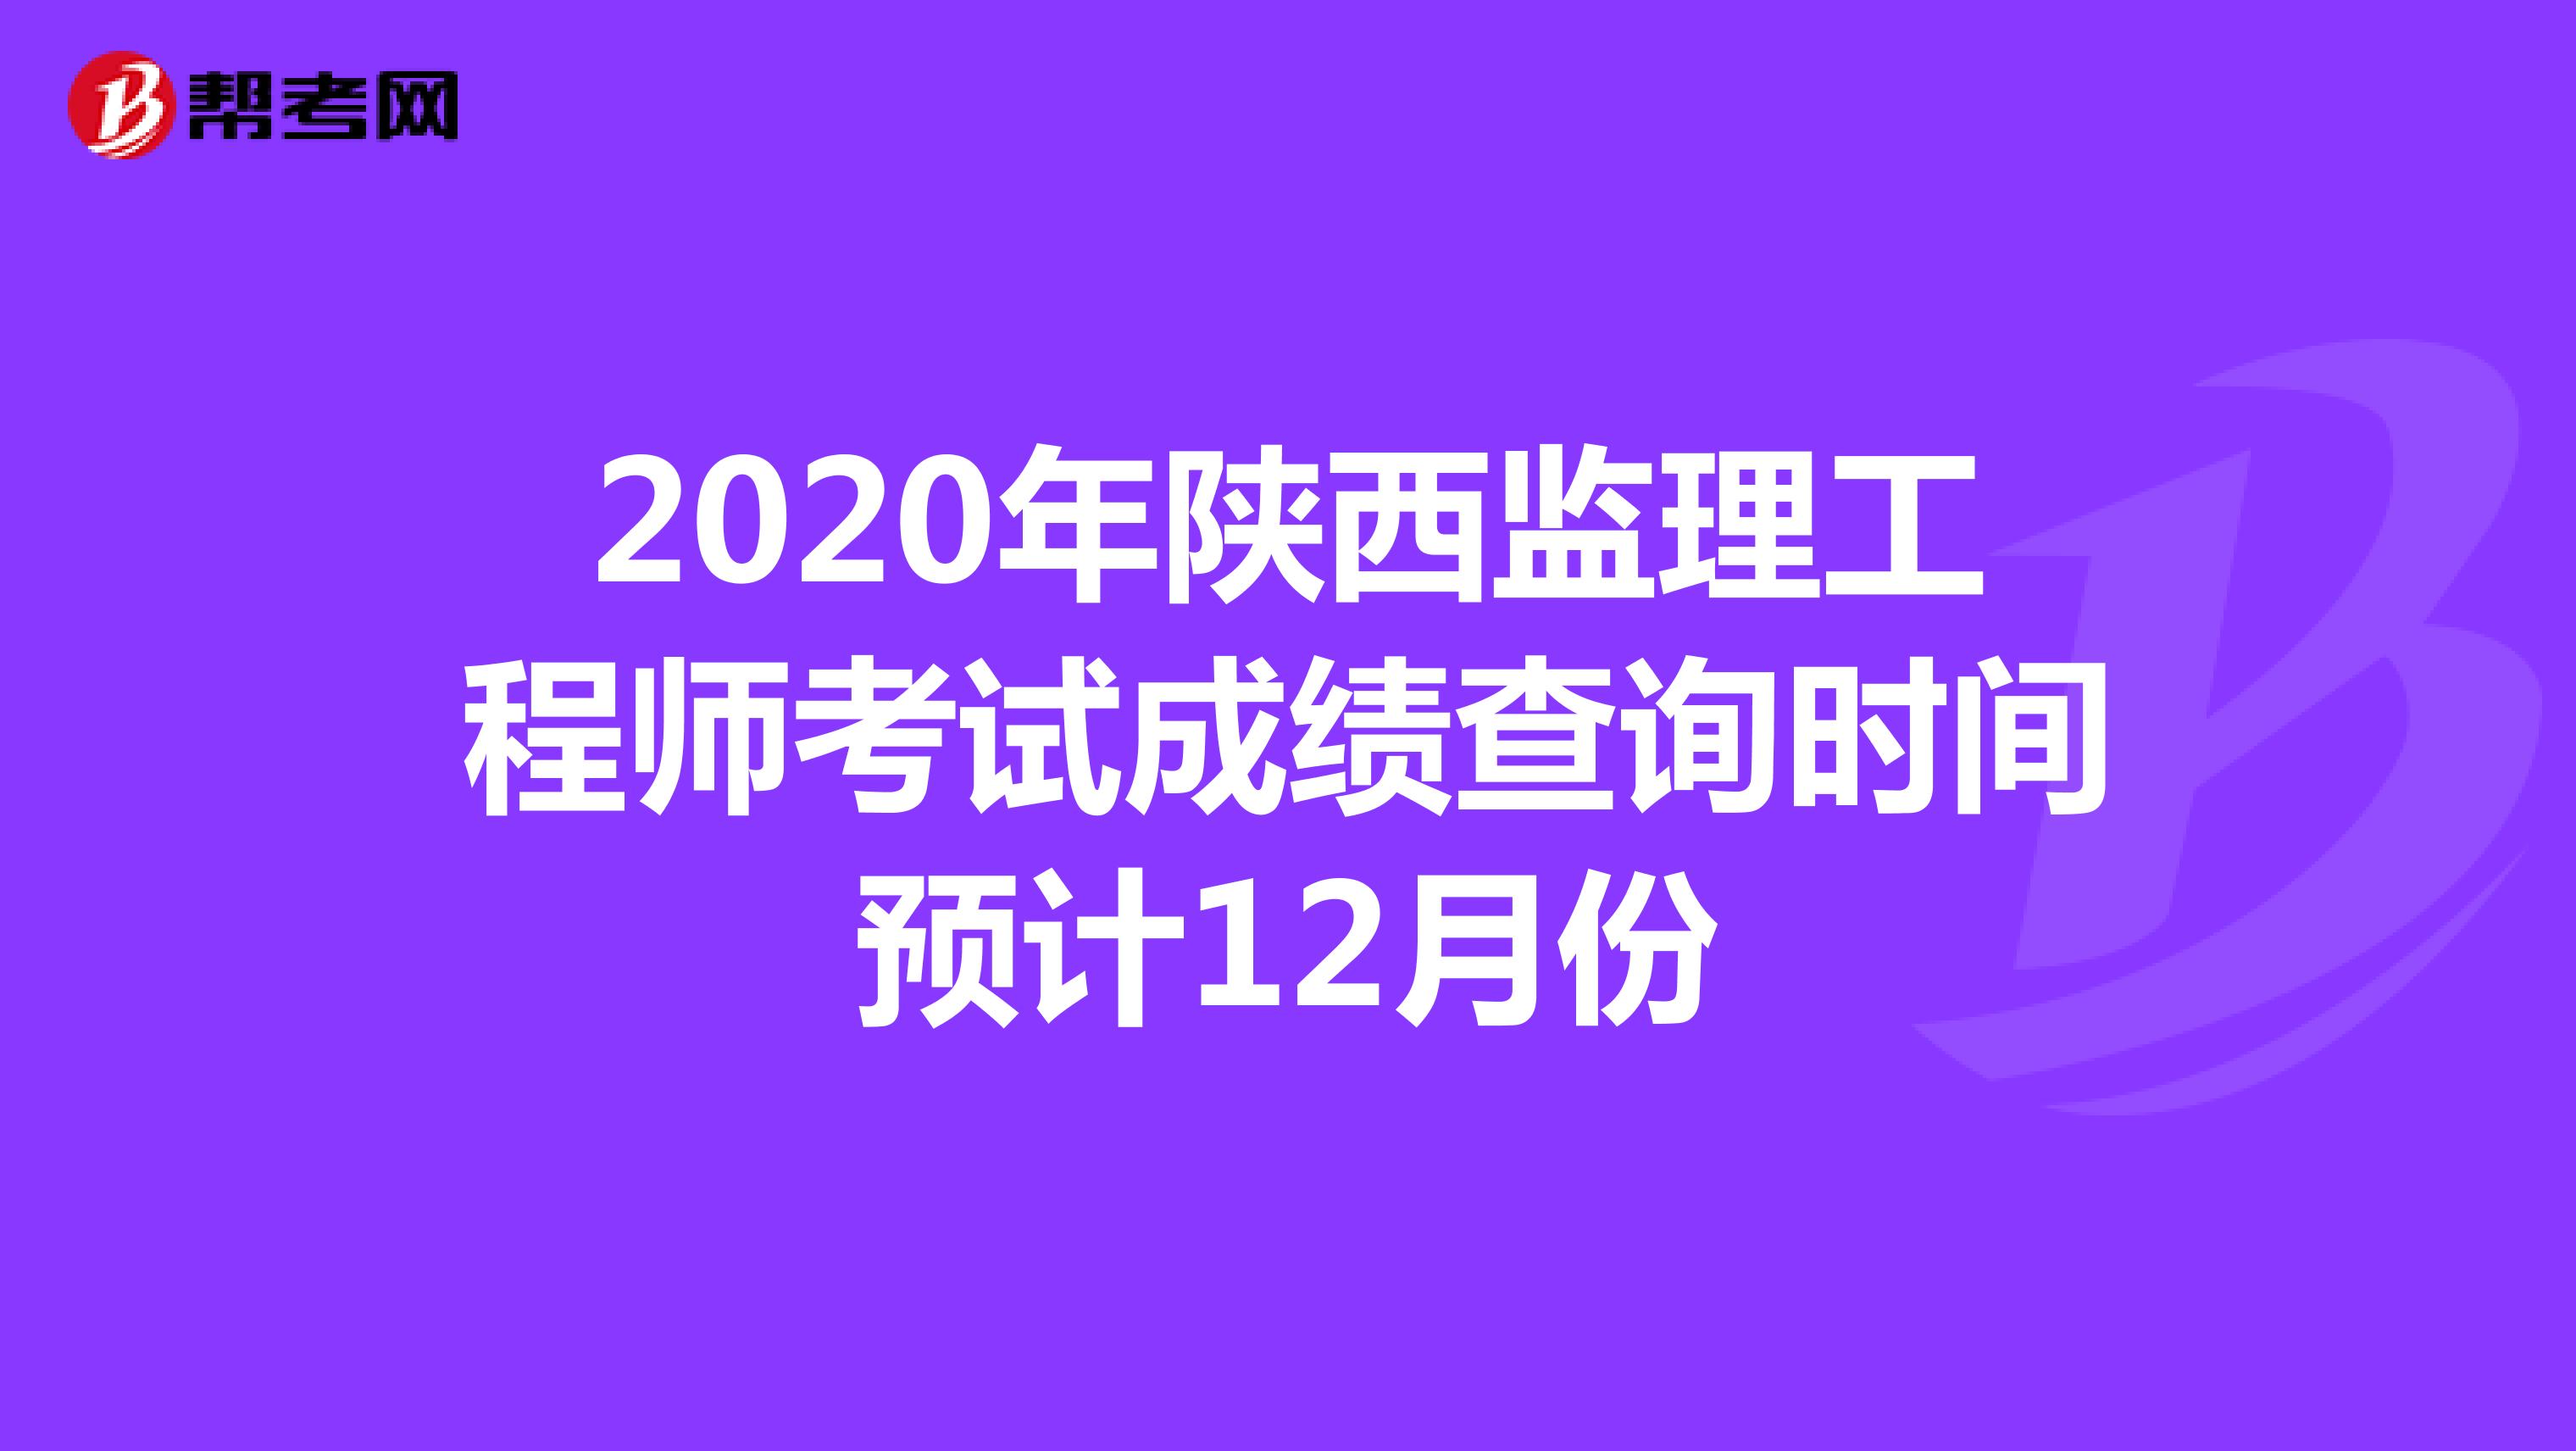 2020年陕西监理工程师考试成绩查询时间预计12月份